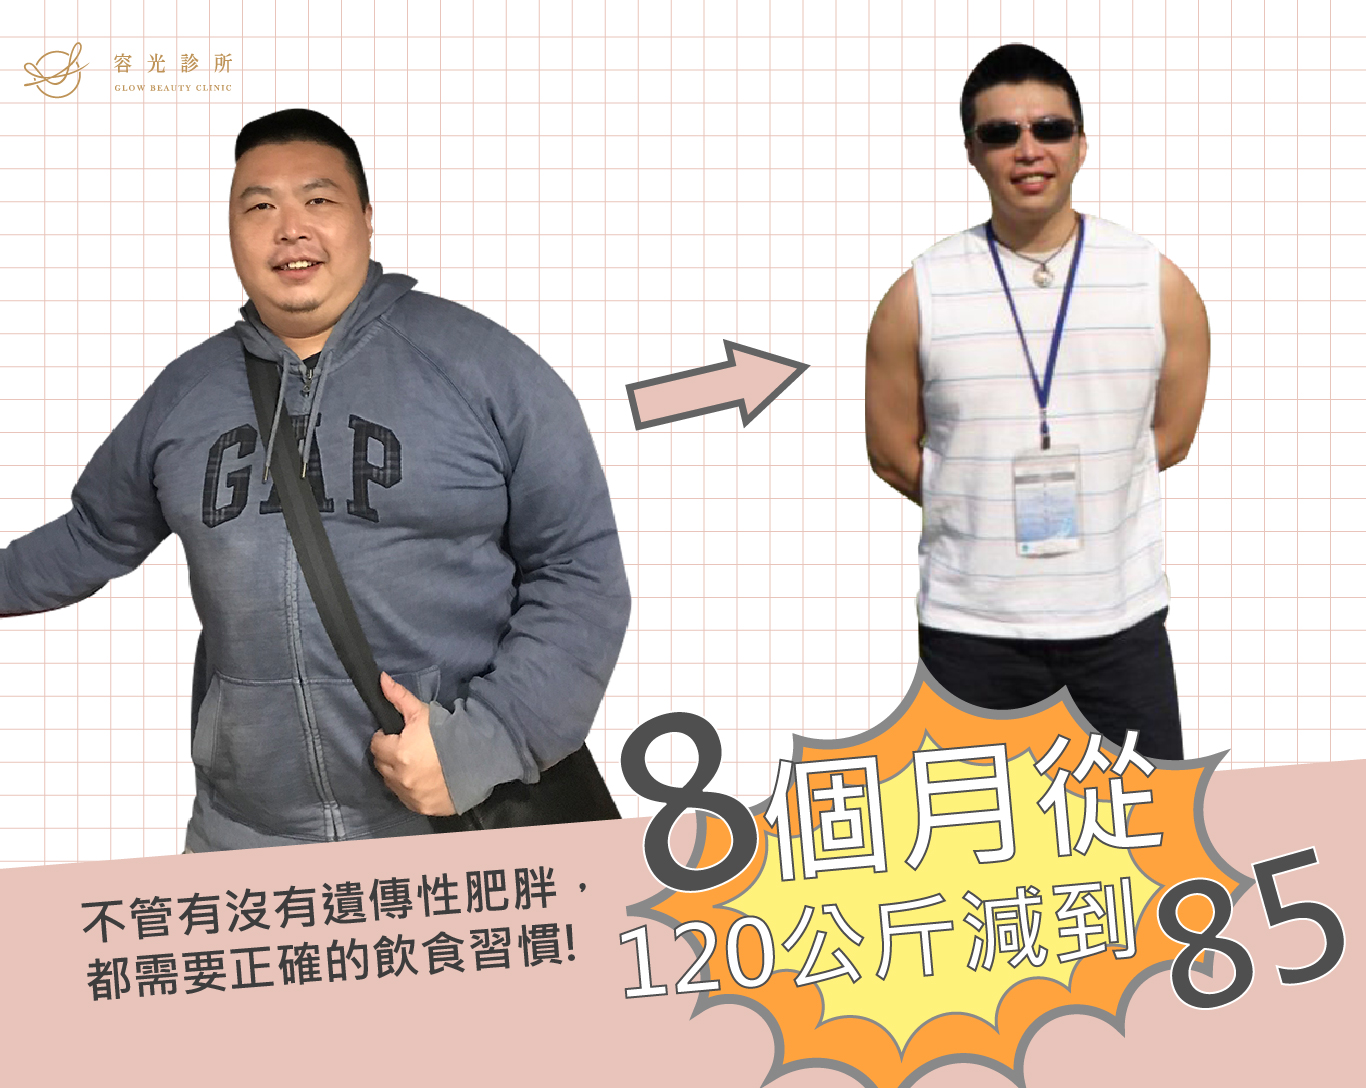 桃園容光診所周建存醫師減肥減重成功案例劉先生真人實證